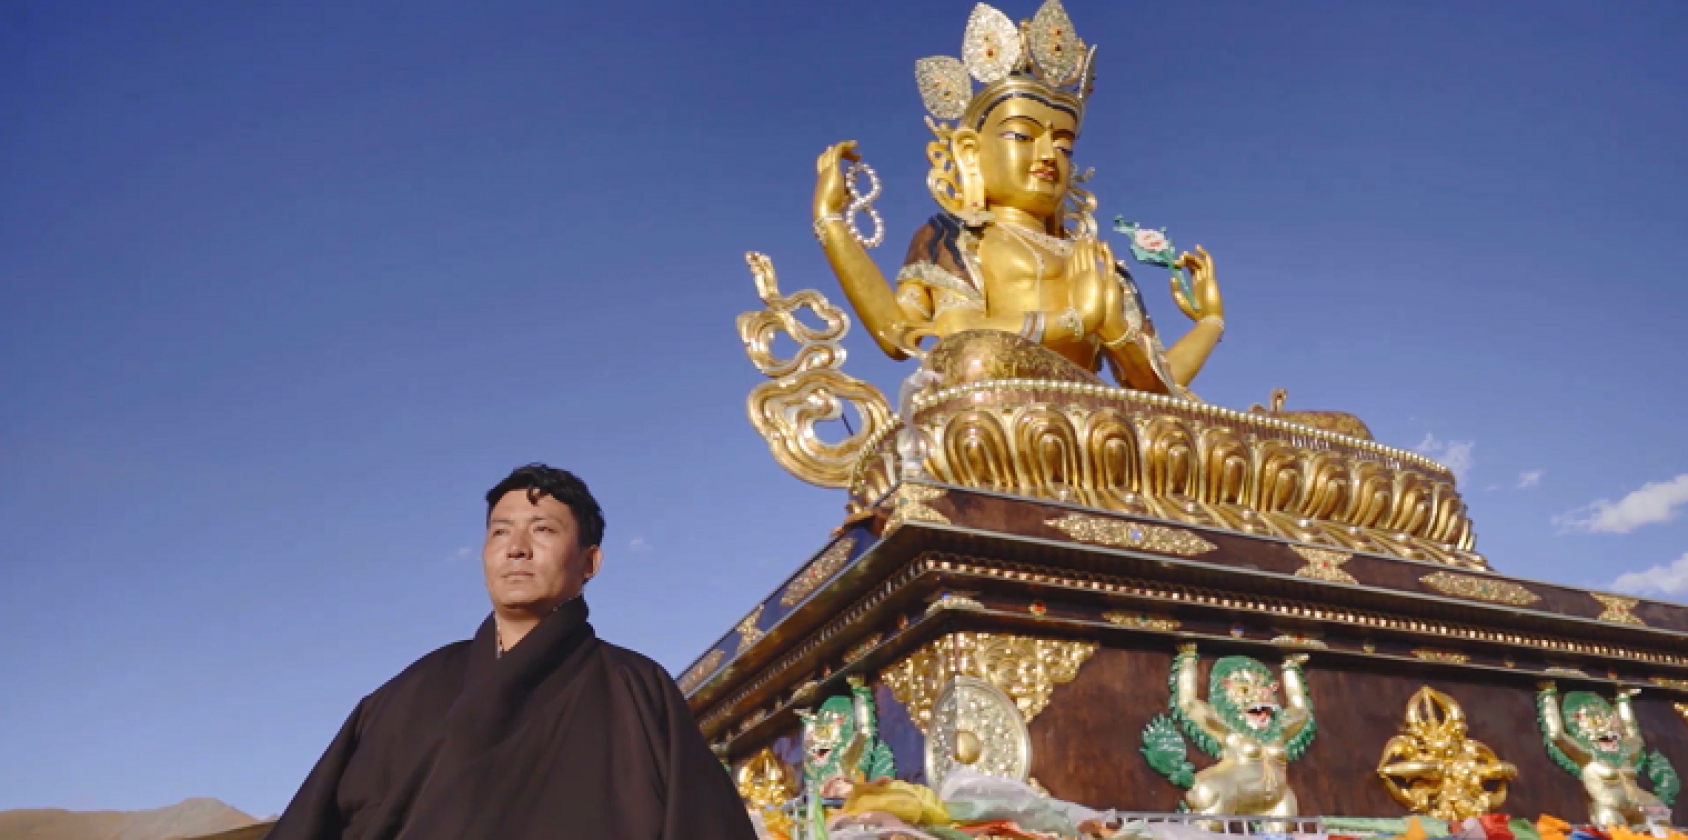 Un homme se tient devant un stoupa (structure architecturale bouddhiste) tibétaine, par une belle journée ensoleillée.